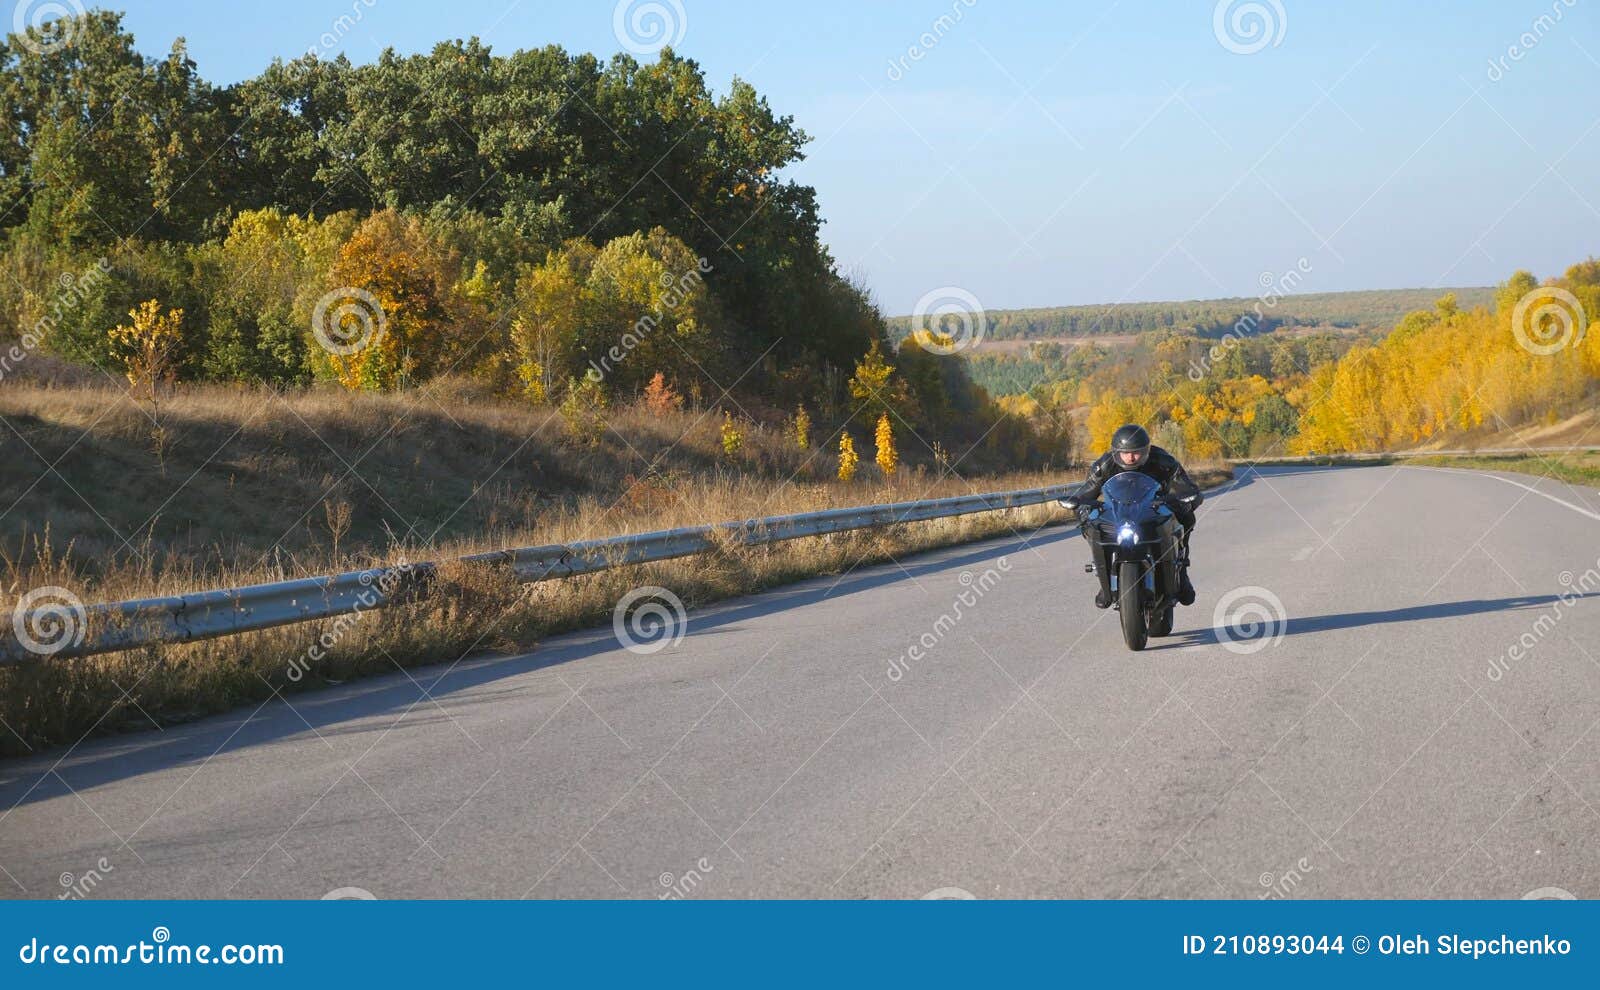 único motociclista de desenho de linha usando capacete, andando de moto na  estrada de asfalto. jovem de macacão de piloto e capacete sentado na  bicicleta esportiva. ilustração em vetor gráfico de desenho